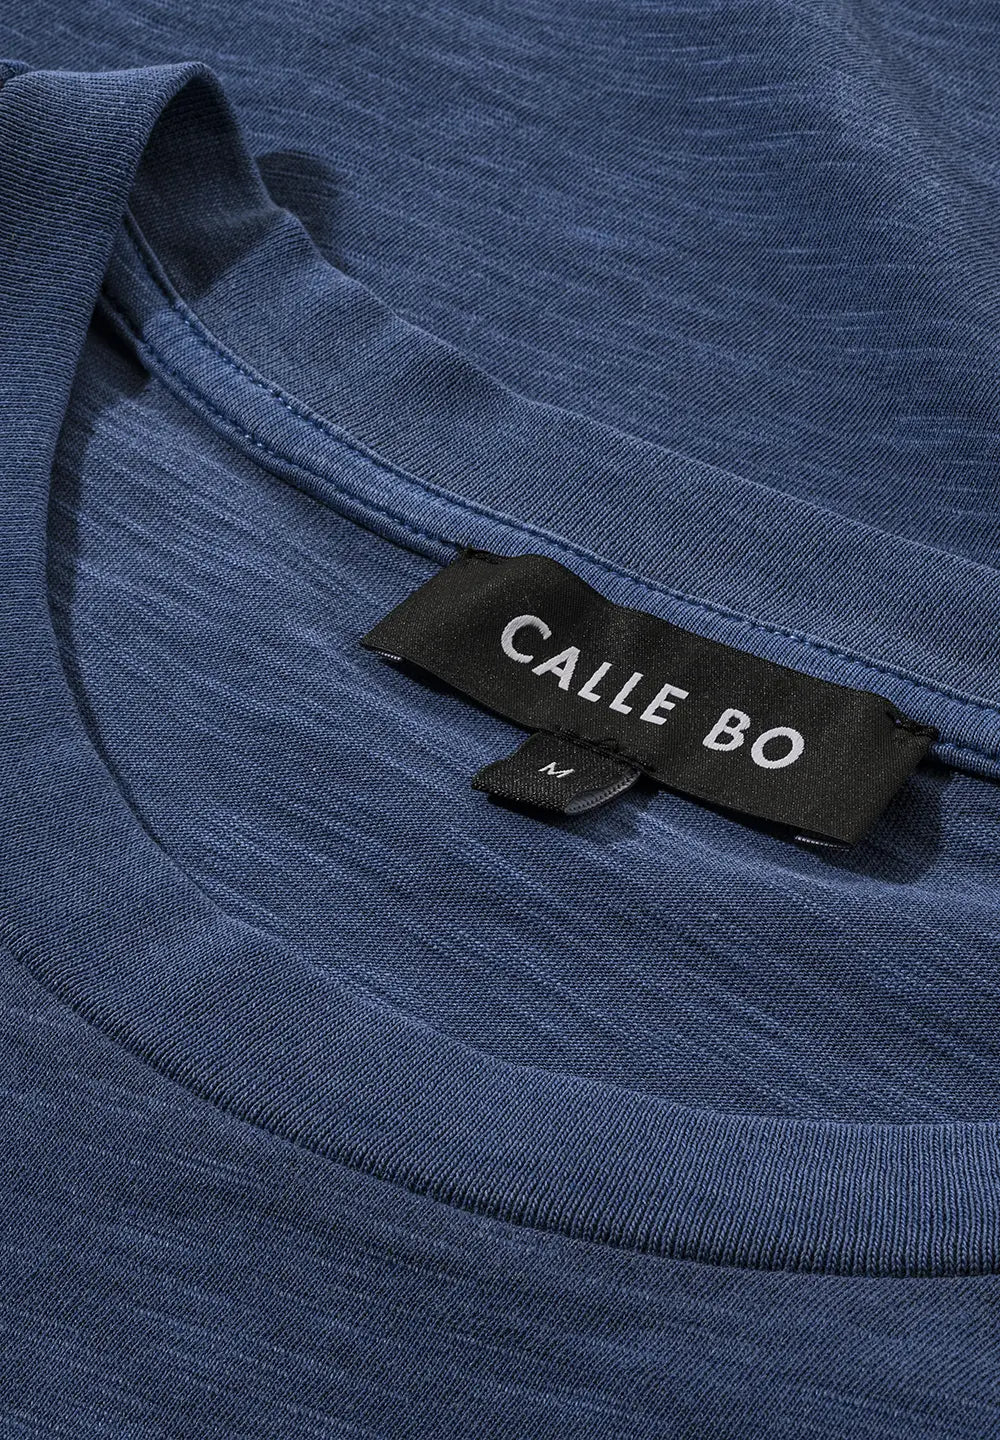 CALLE BO garment dyed T-Shirt